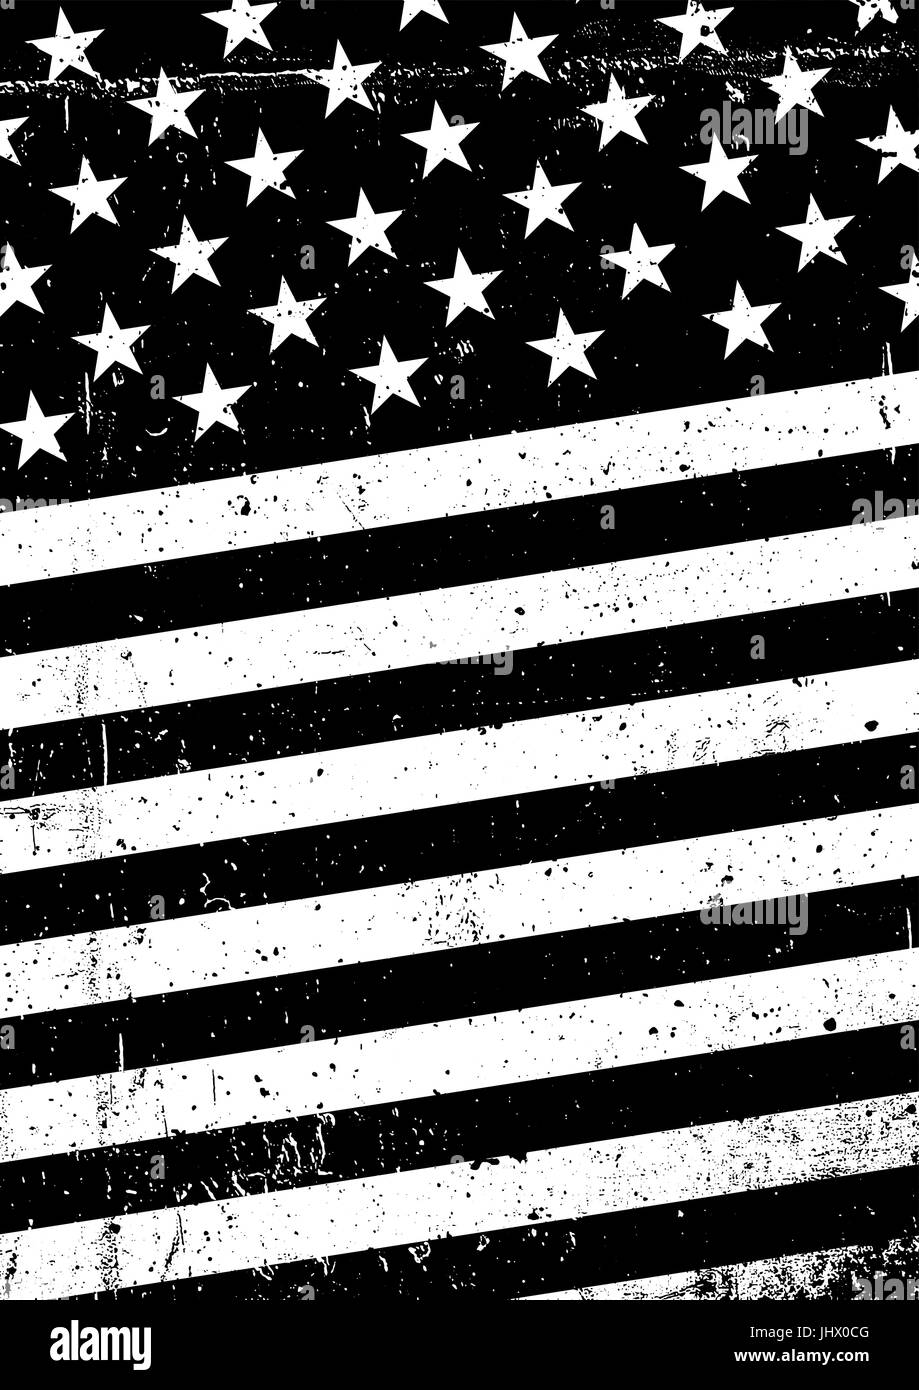 Grunge en blanco y negro de la bandera de los Estados Unidos de América. Resumen antecedentes patrióticos americanos. Vector grunge ilustración, formato A4. Ilustración del Vector